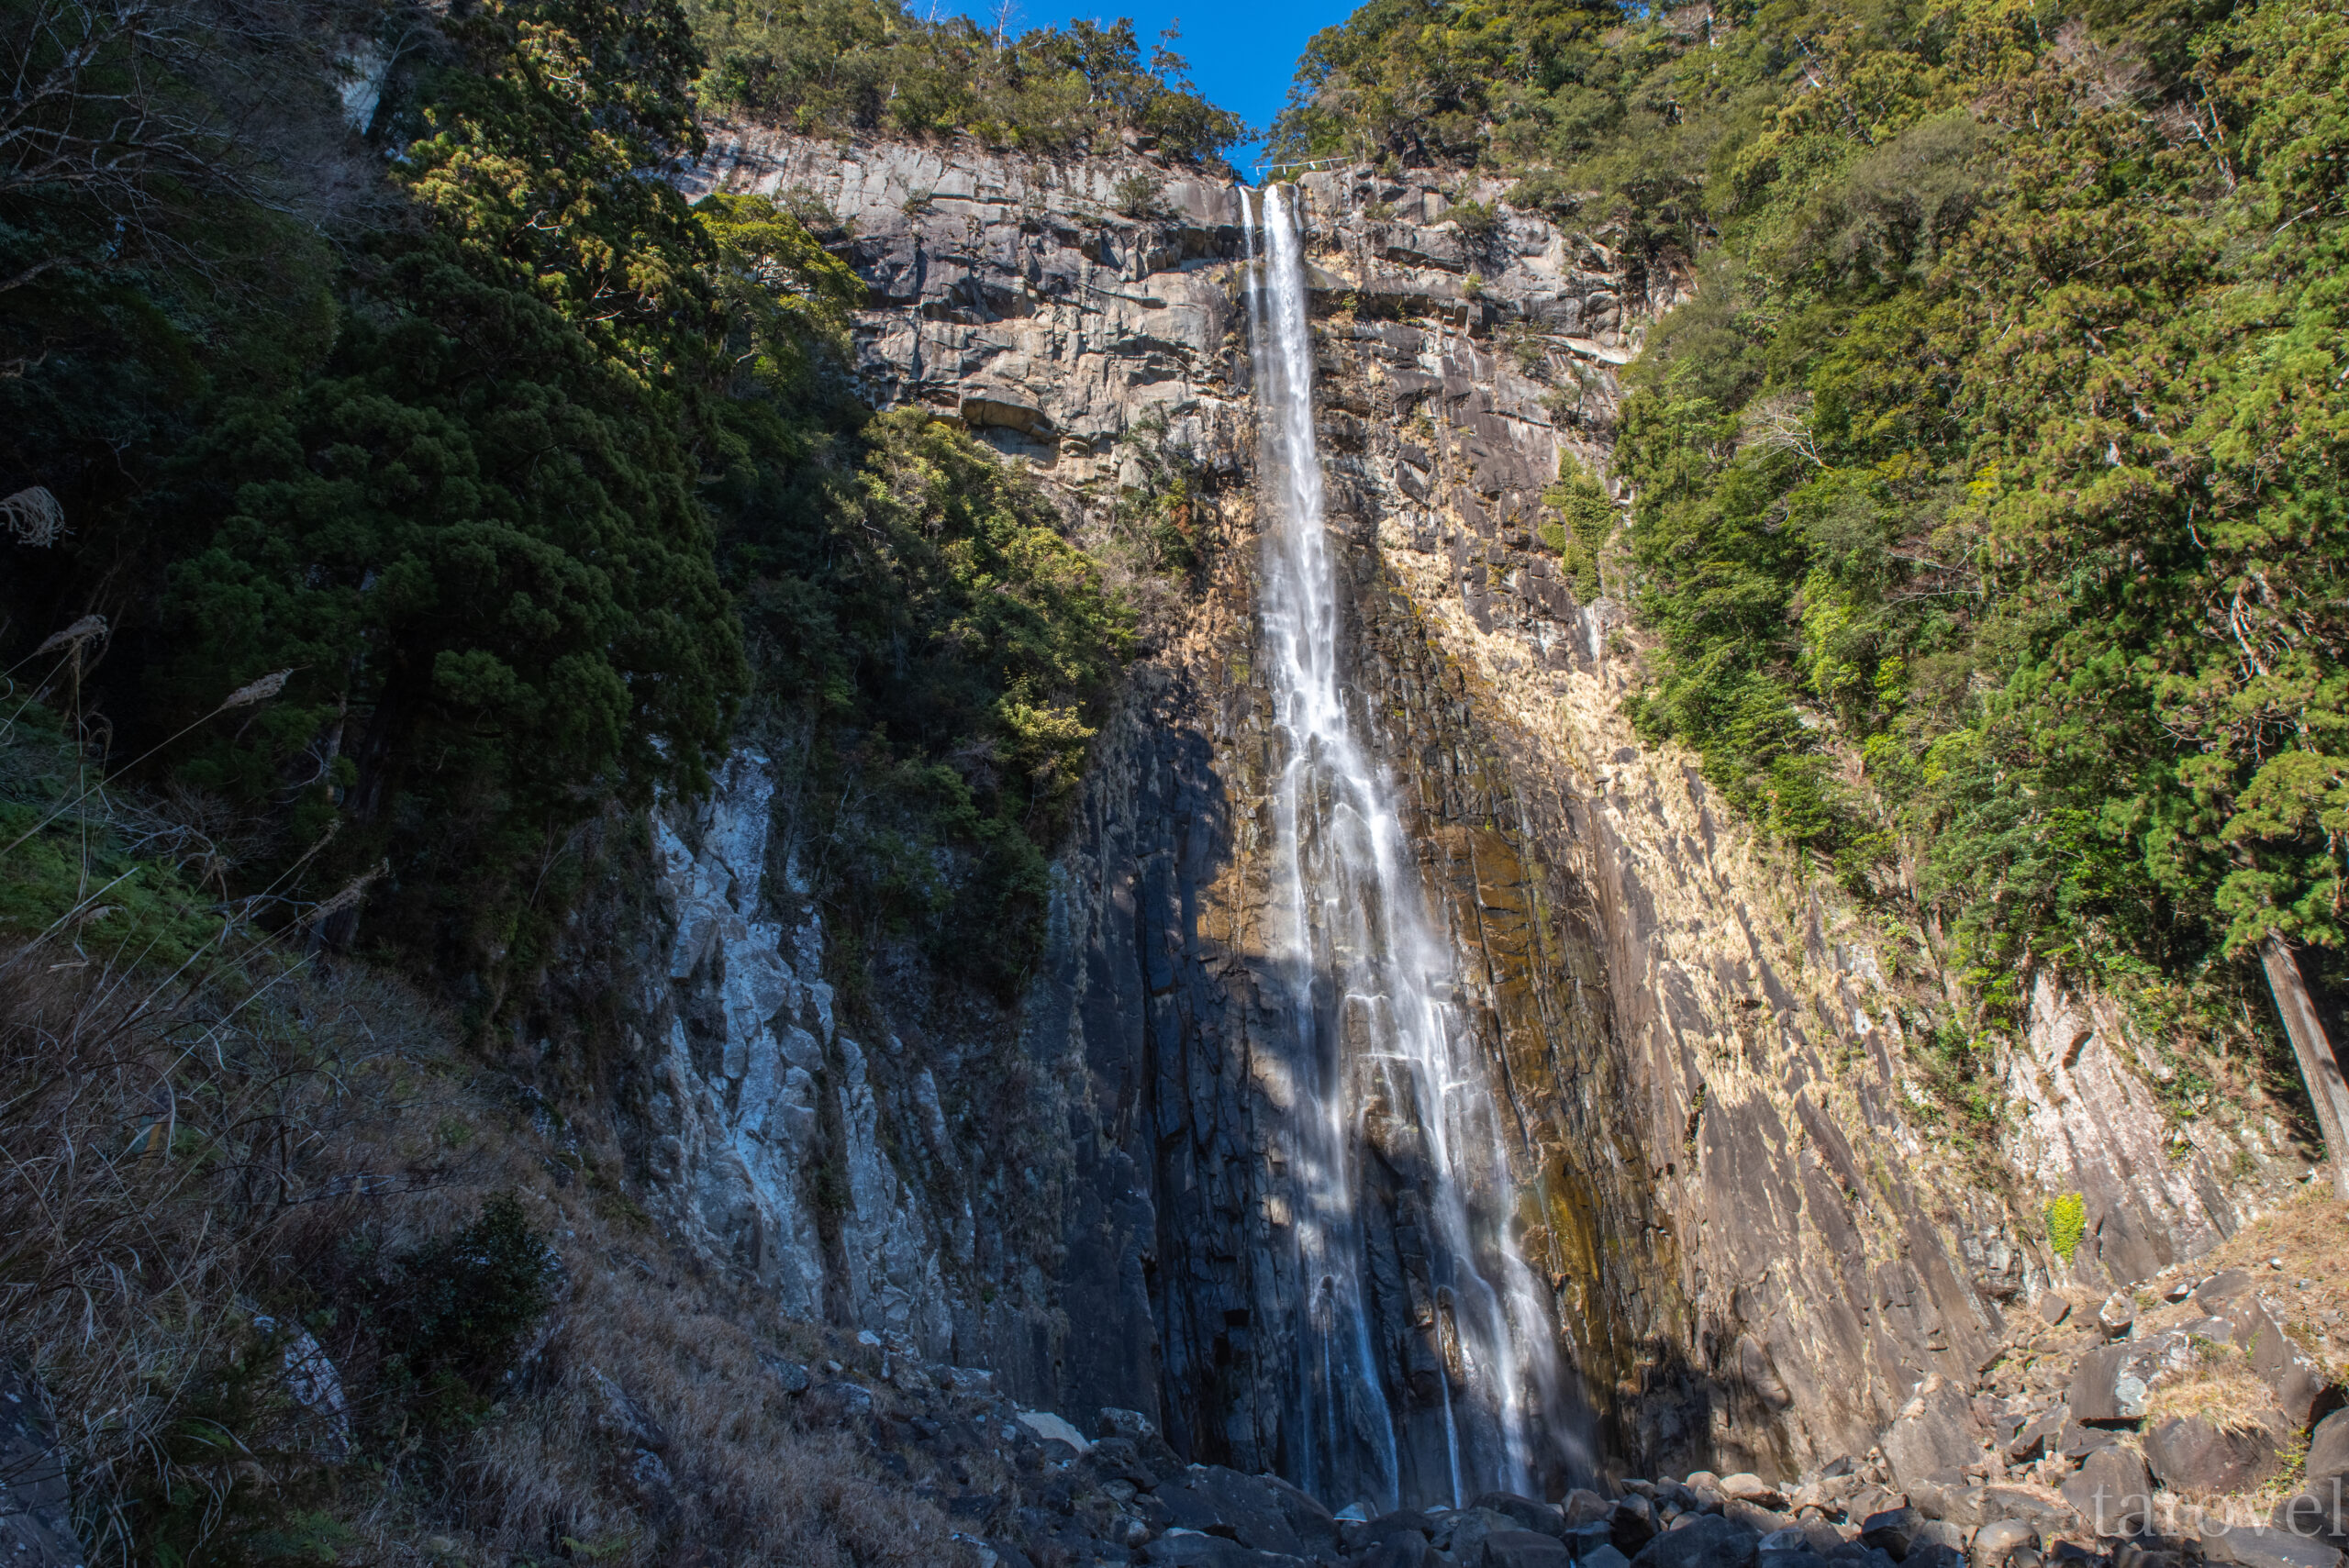 天地の壮大なる息吹を感じる至極の絶景。和歌山県の那智の滝への行き方。